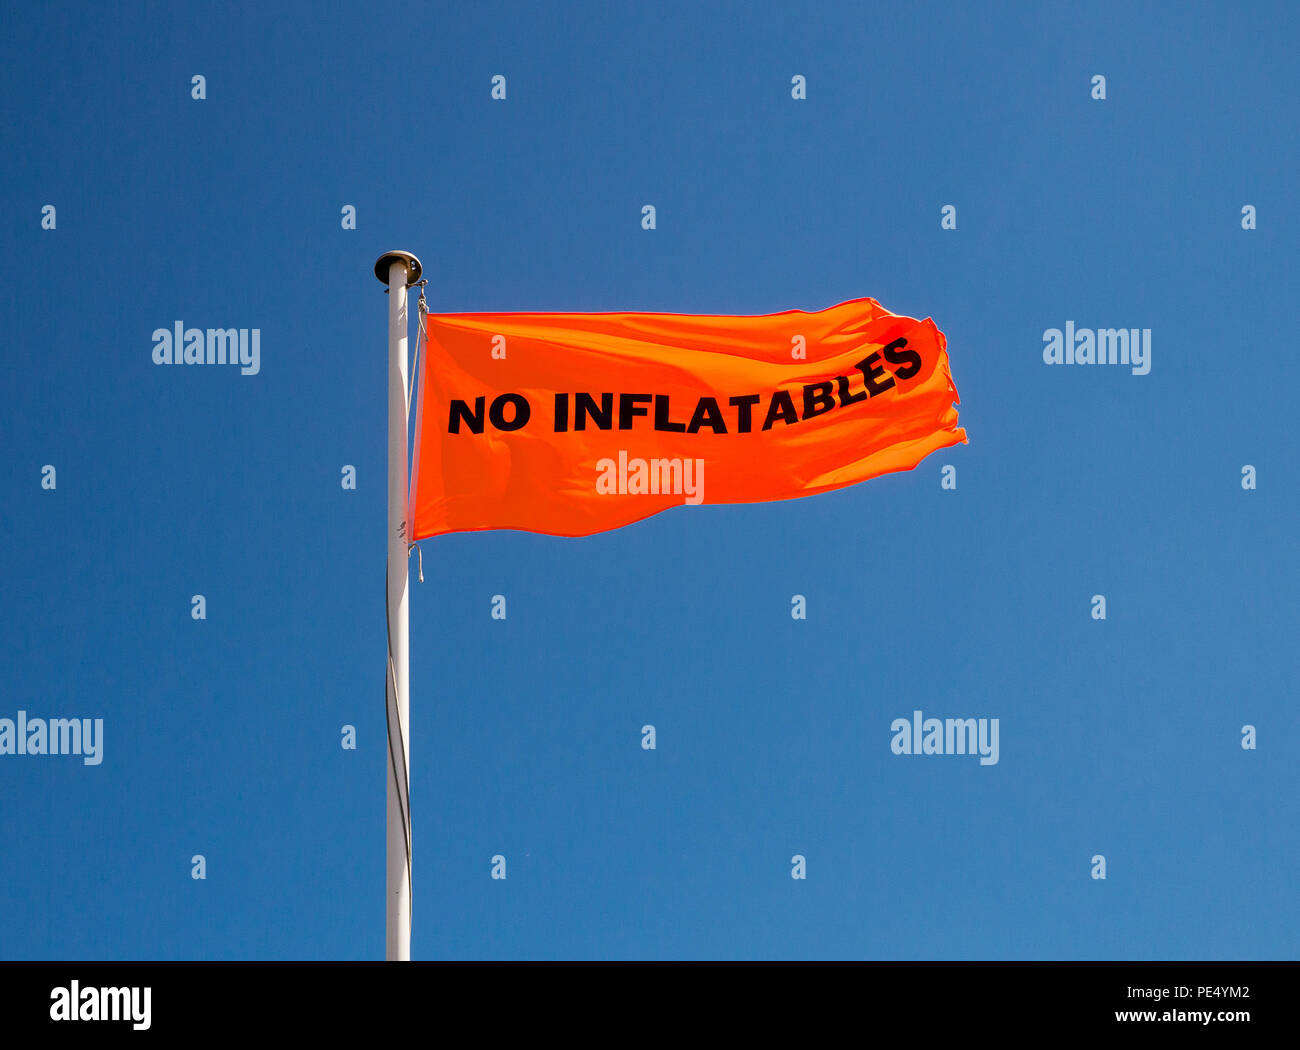 Image en couleur d'un drapeau orange avec pas de pneumatiques en lettres noires sur un mât métallique, tourné à partir de ci-dessous contre un ciel bleu clair Banque D'Images